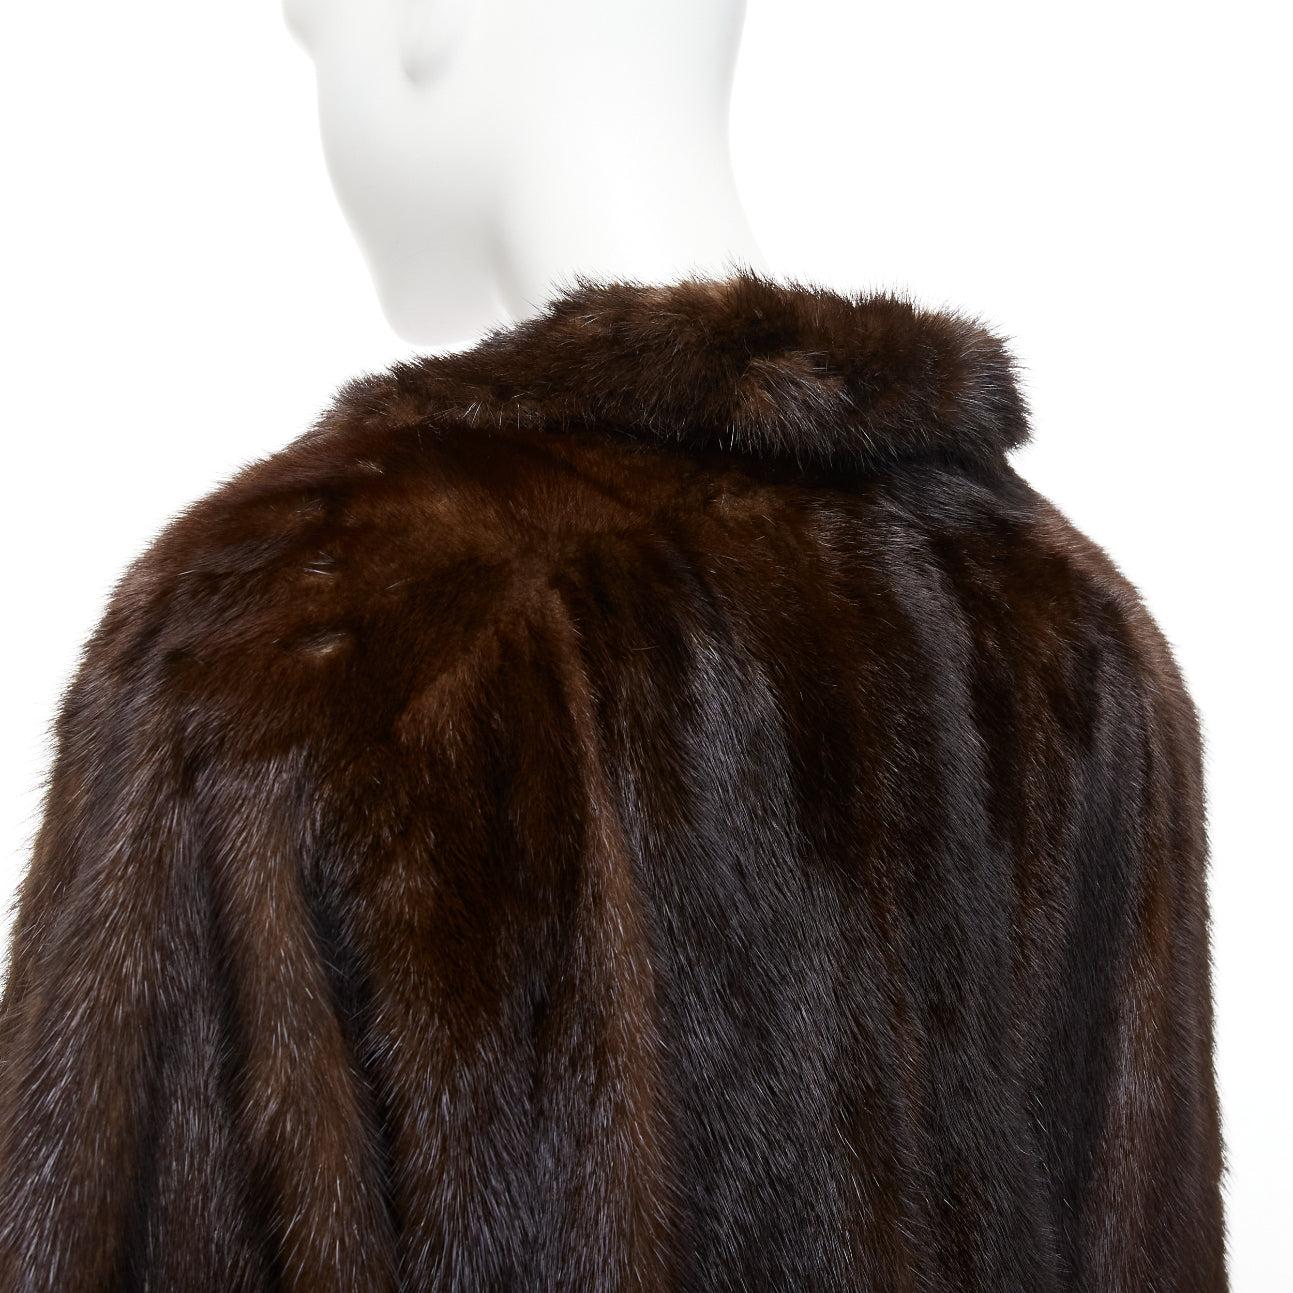 UNLABELLED dark brown genuine fur tie collar longline long sleeve jacket coat For Sale 3